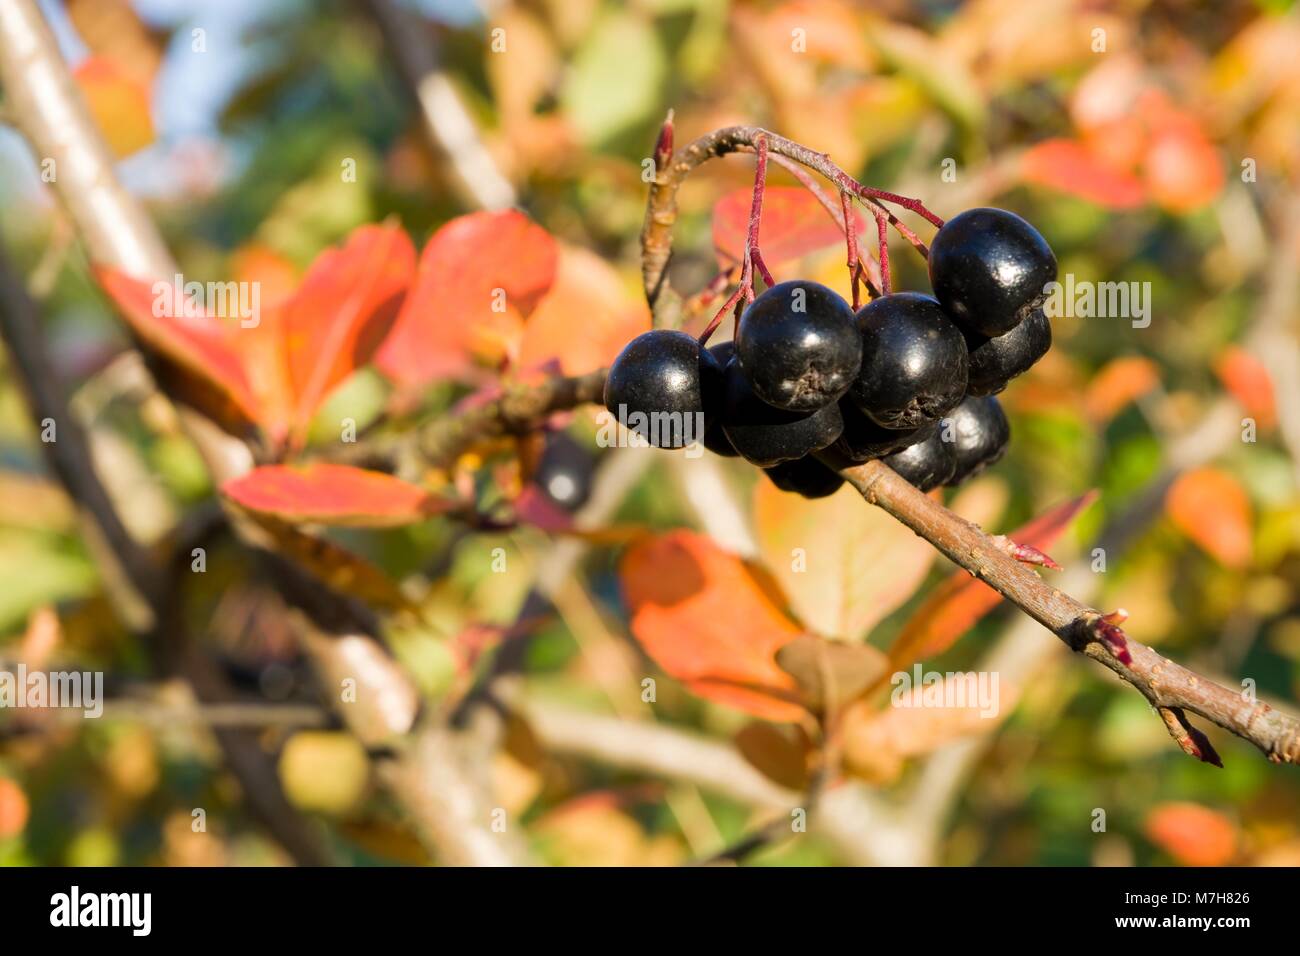 Selektiver Fokus auf reife Aronia Beeren auf einem Busch im Herbst Farben  Stockfotografie - Alamy